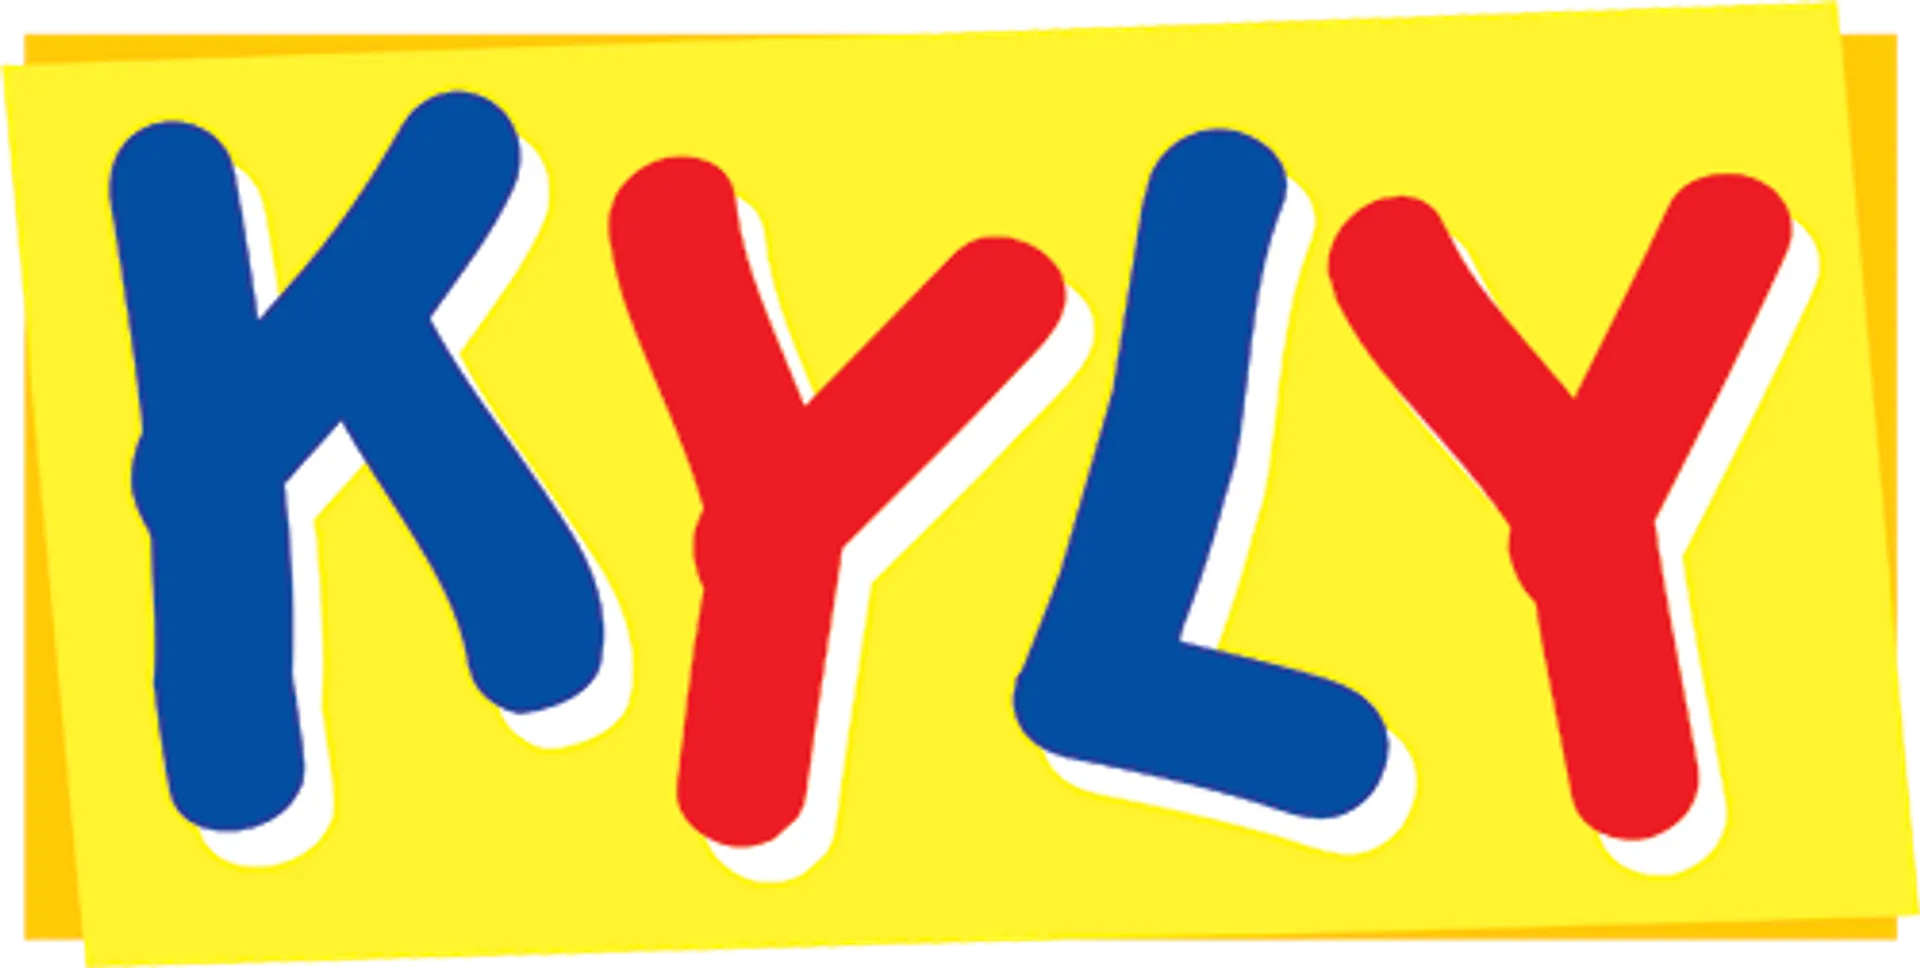 KYLY logo de catálogo